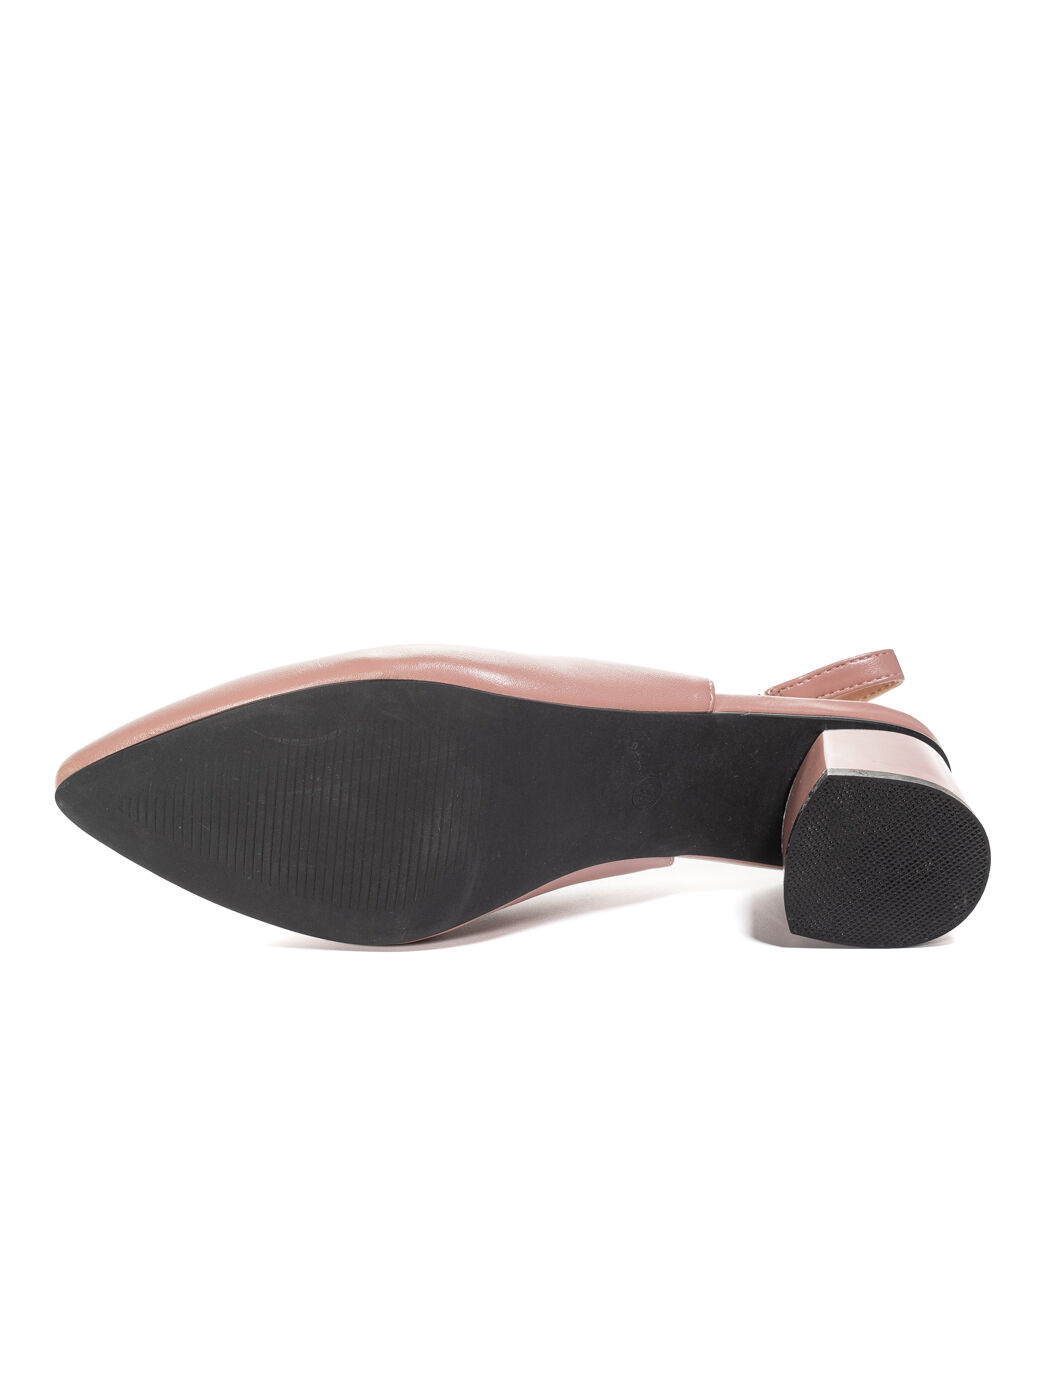 Туфли женские розовые экокожа каблук устойчивый лето от производителя CM вид 2